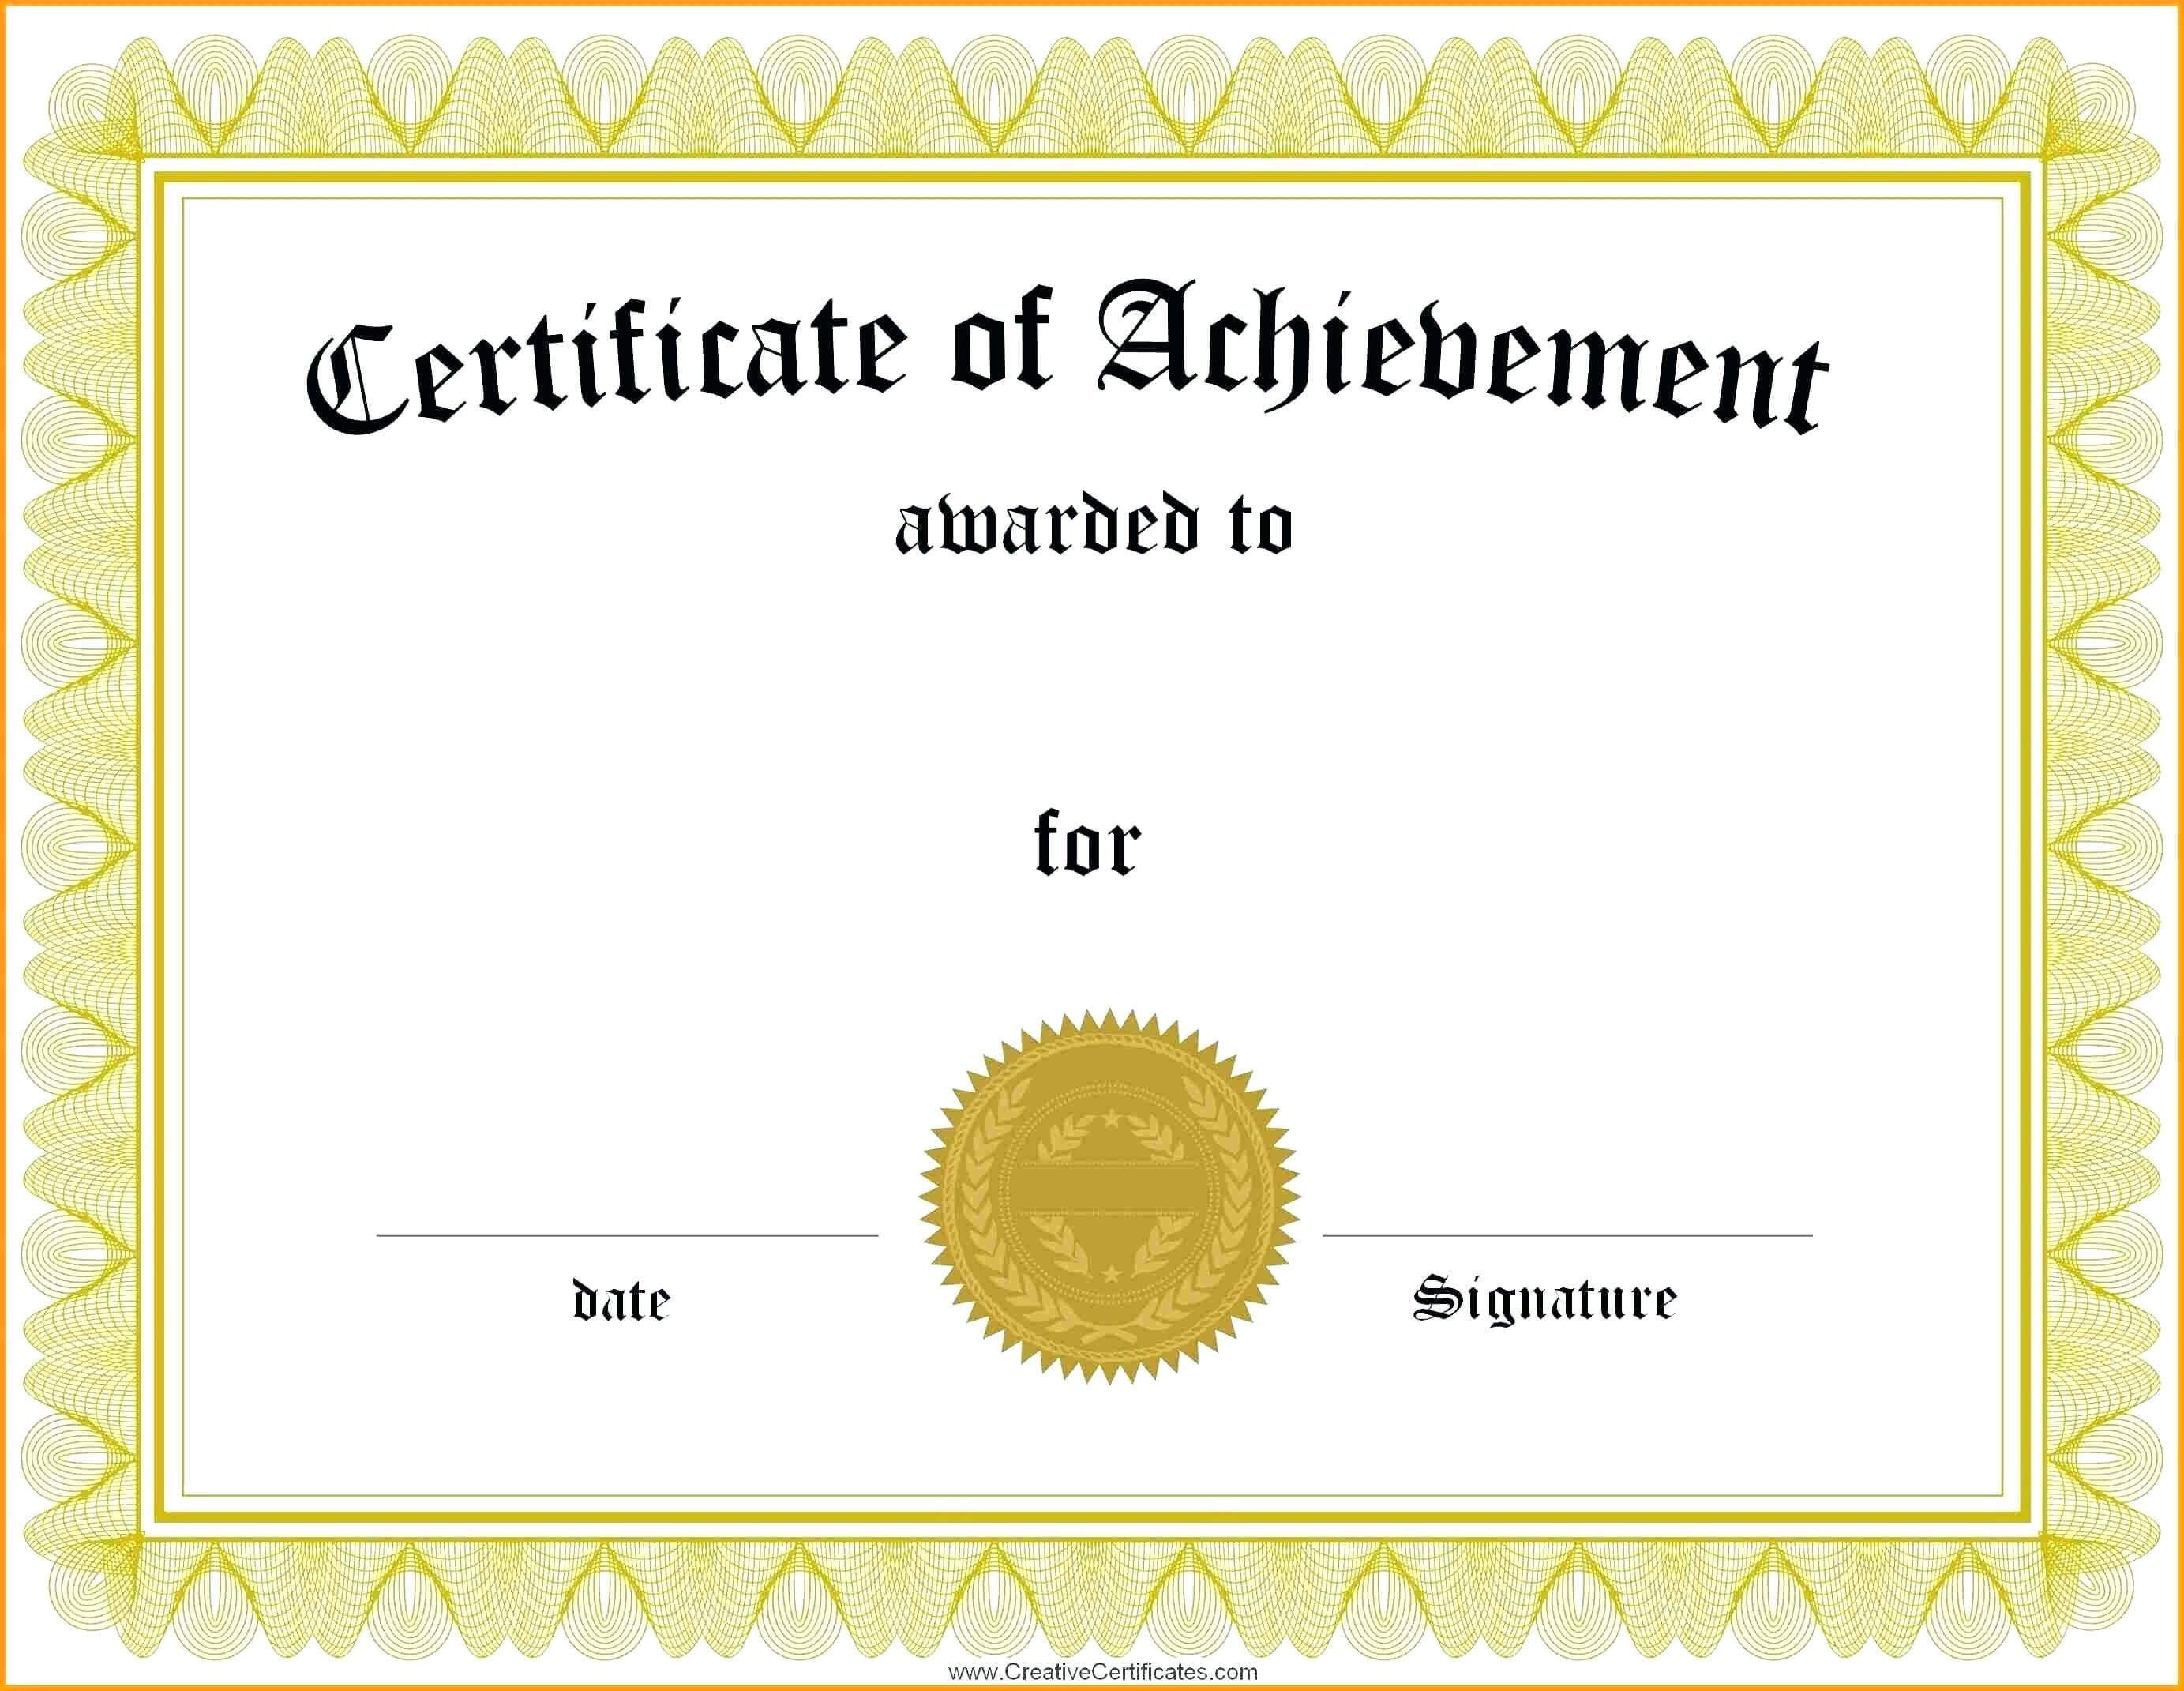 Graduation Certificate Template Word – Wovensheet.co In Certificate Of Achievement Template Word